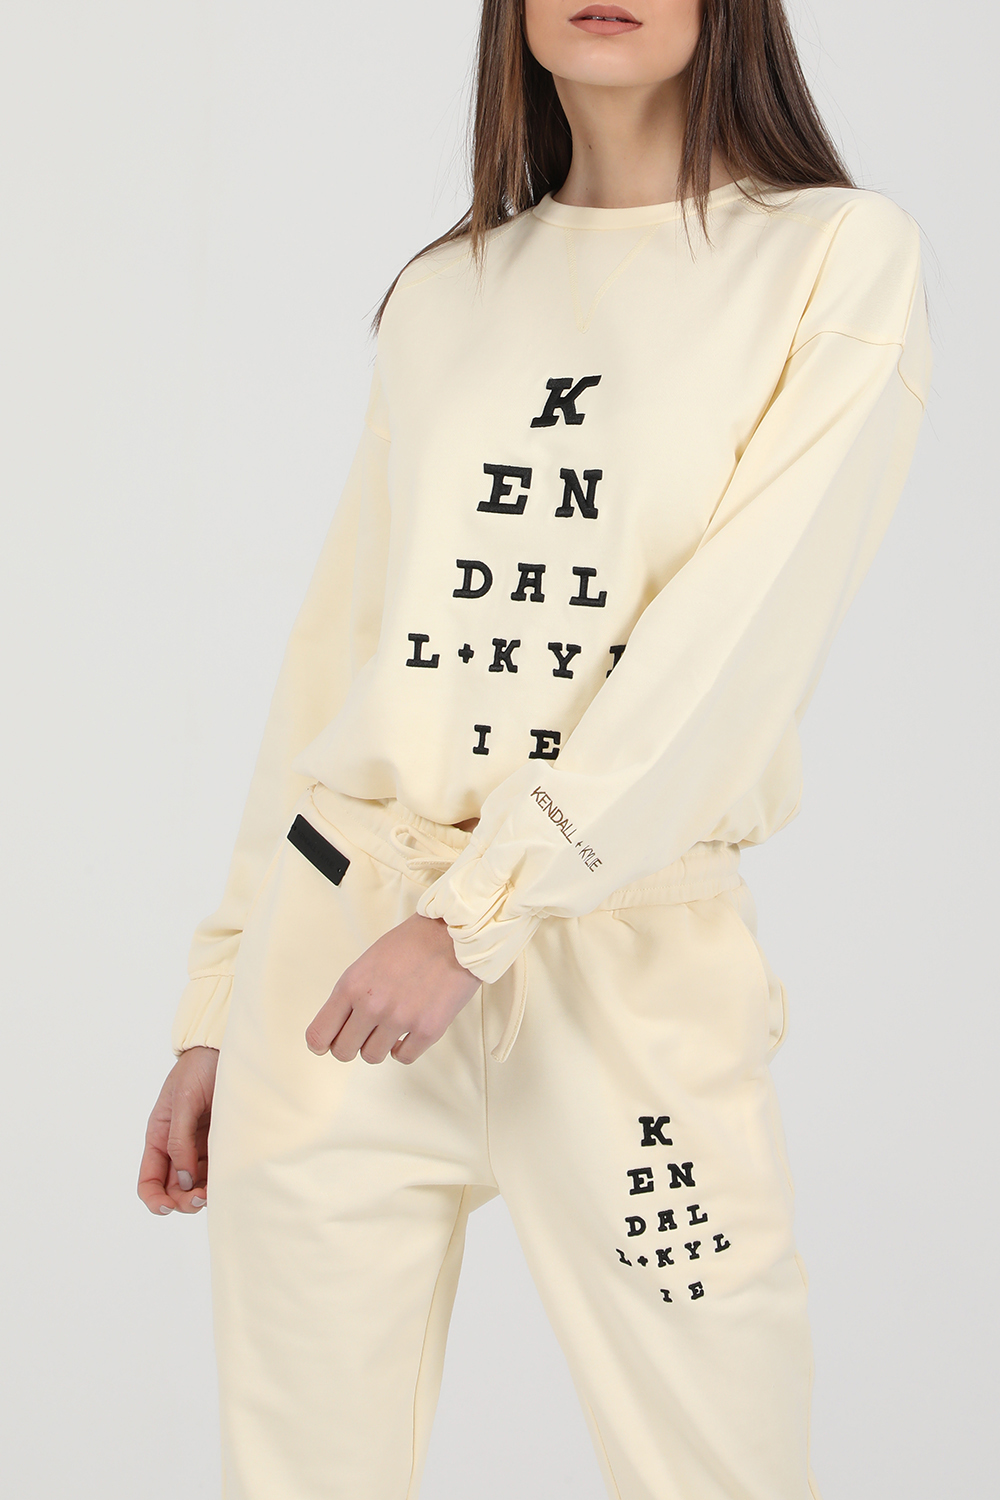 Γυναικεία/Ρούχα/Φούτερ/Μπλούζες KENDALL+KYLIE - Γυναικεία φούτερ μπλούζα KENDALL+KYLIE κίτρινη